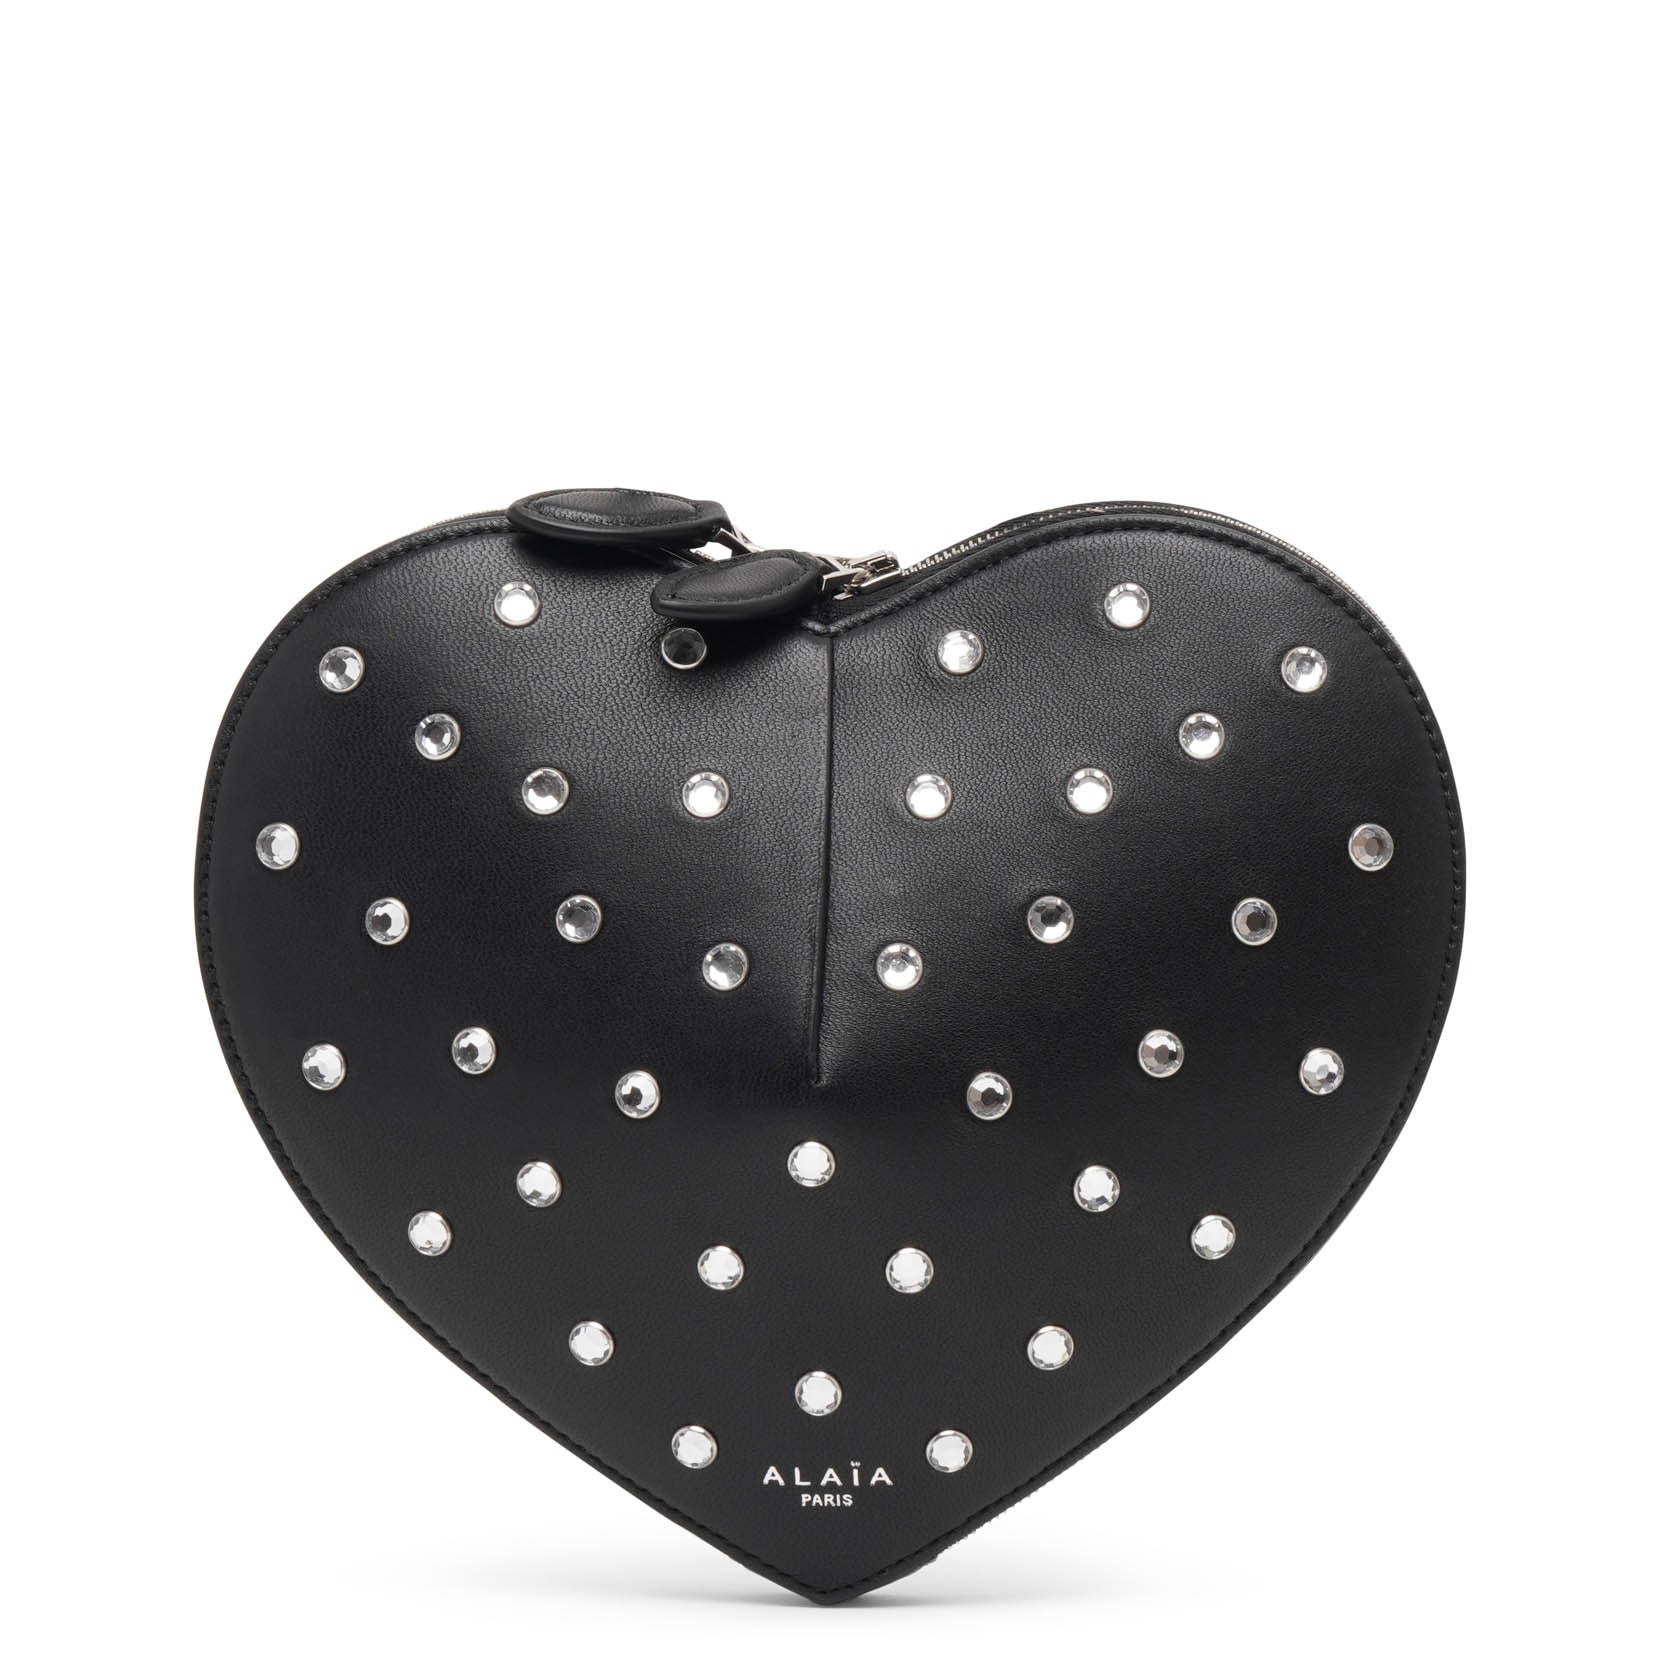 Alaïa Le Coeur Black Studded Leather Crossbody Bag